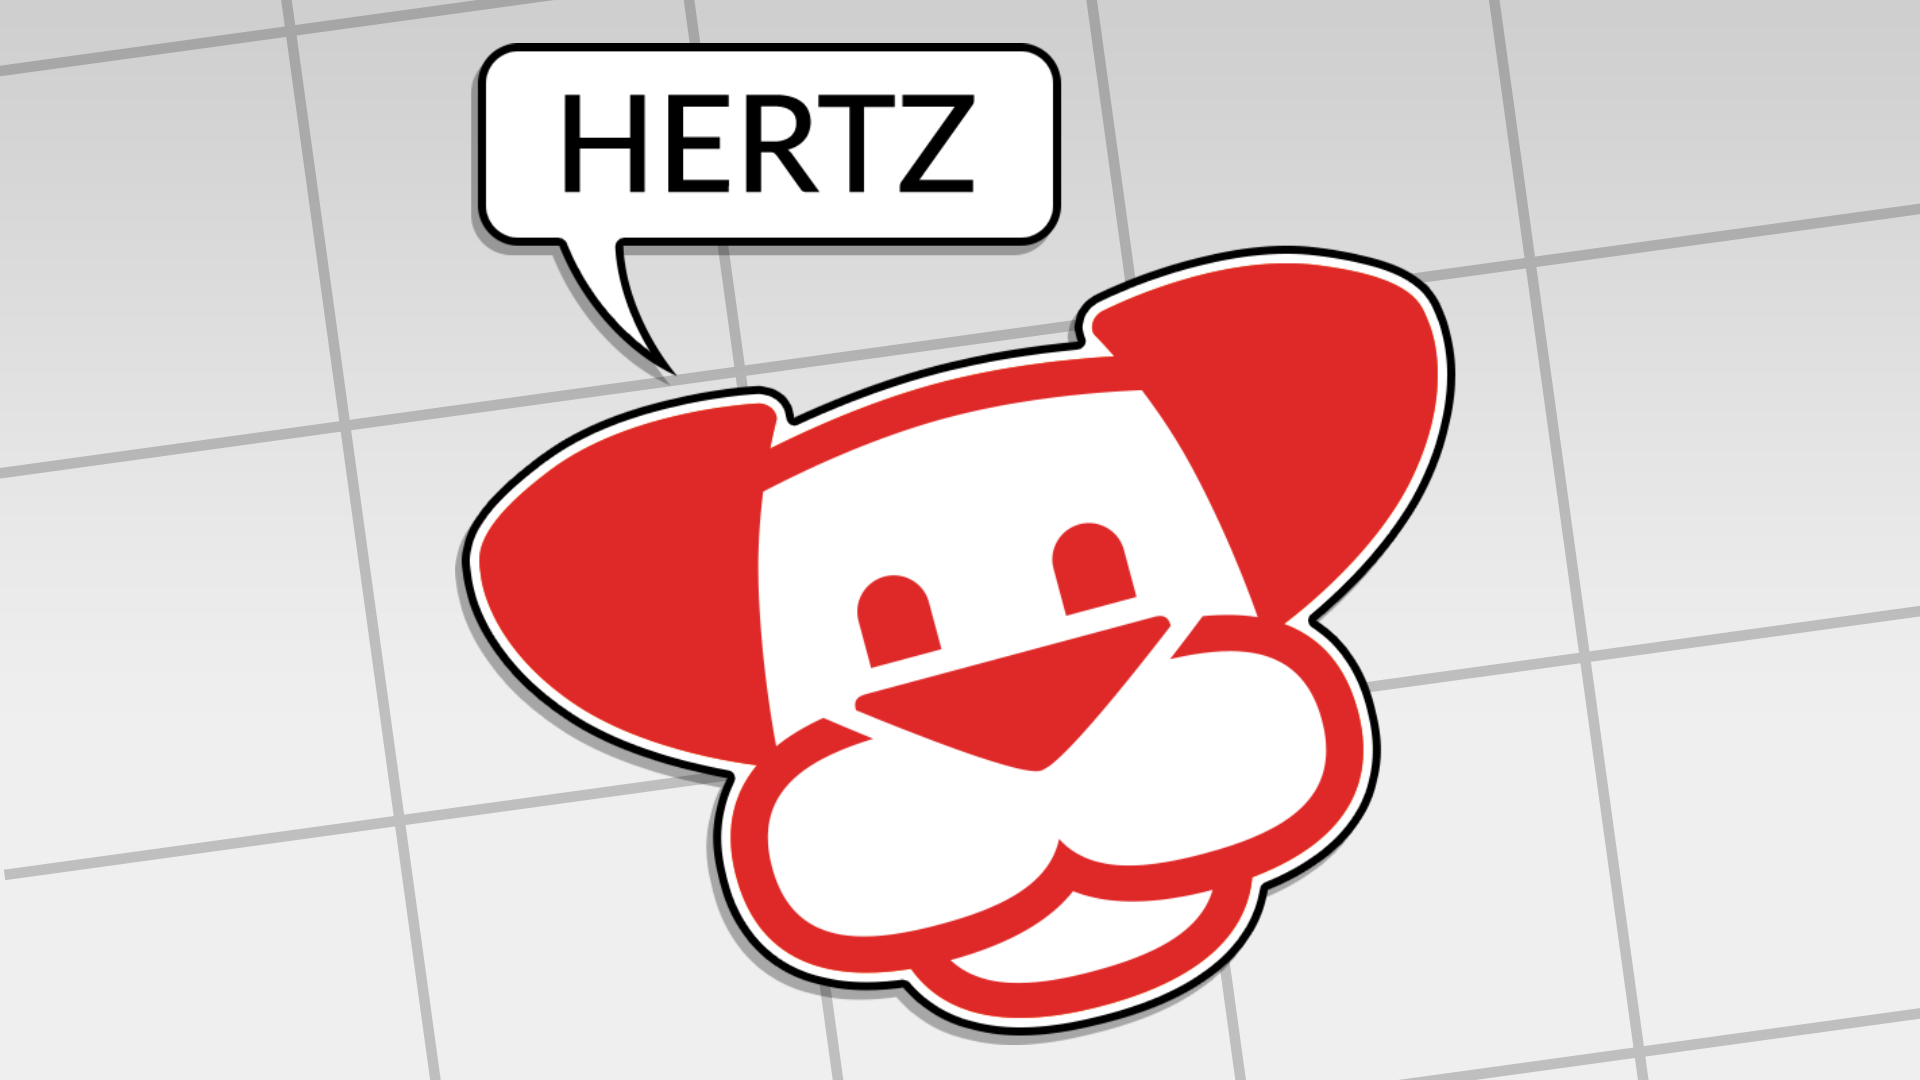 Love HERTZ